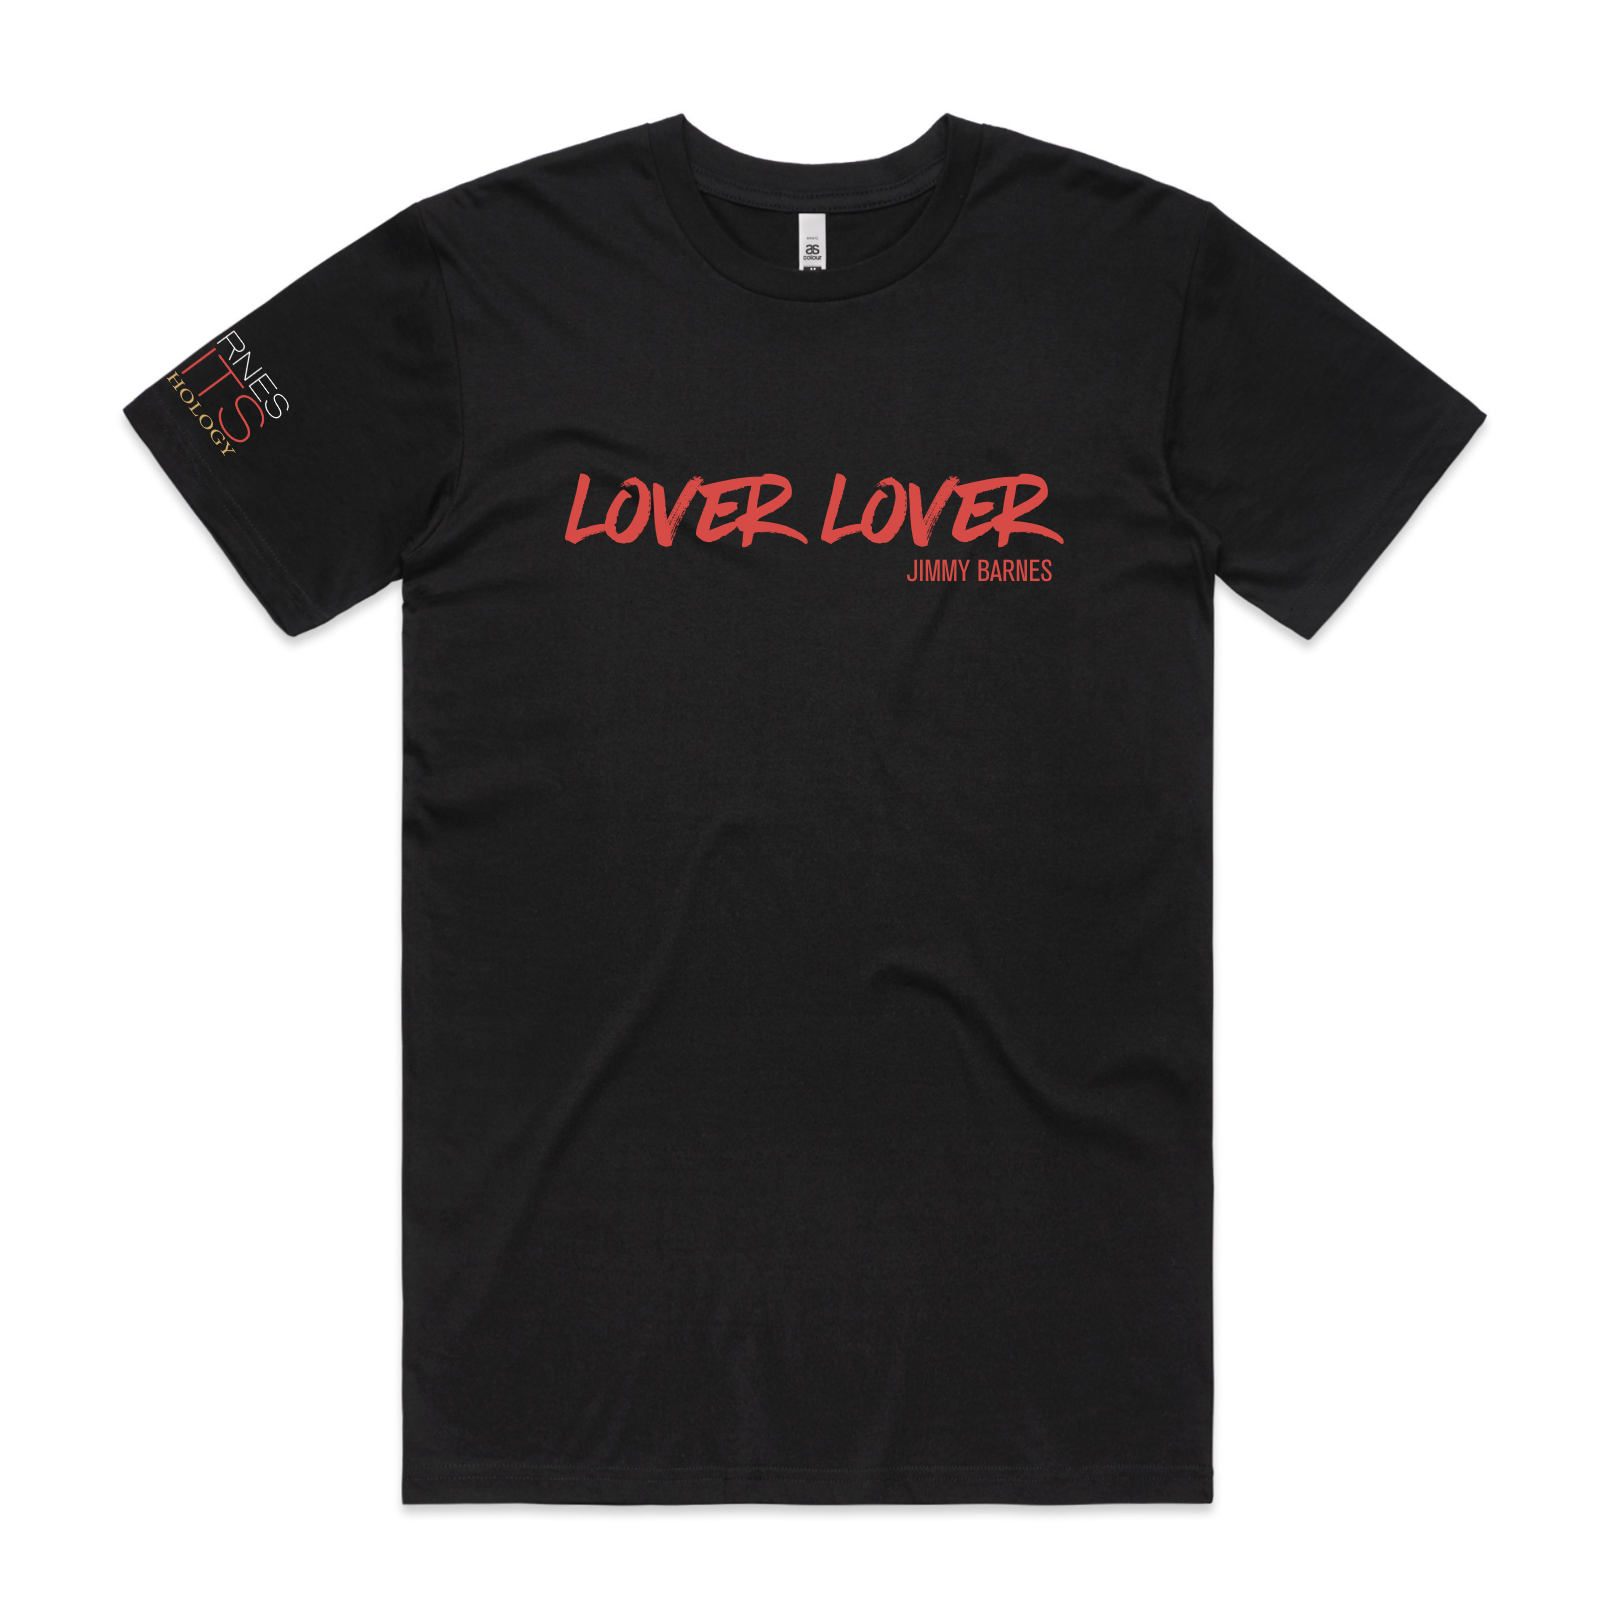 Lover Lover Jimmy Barnes | Unisex T shirt